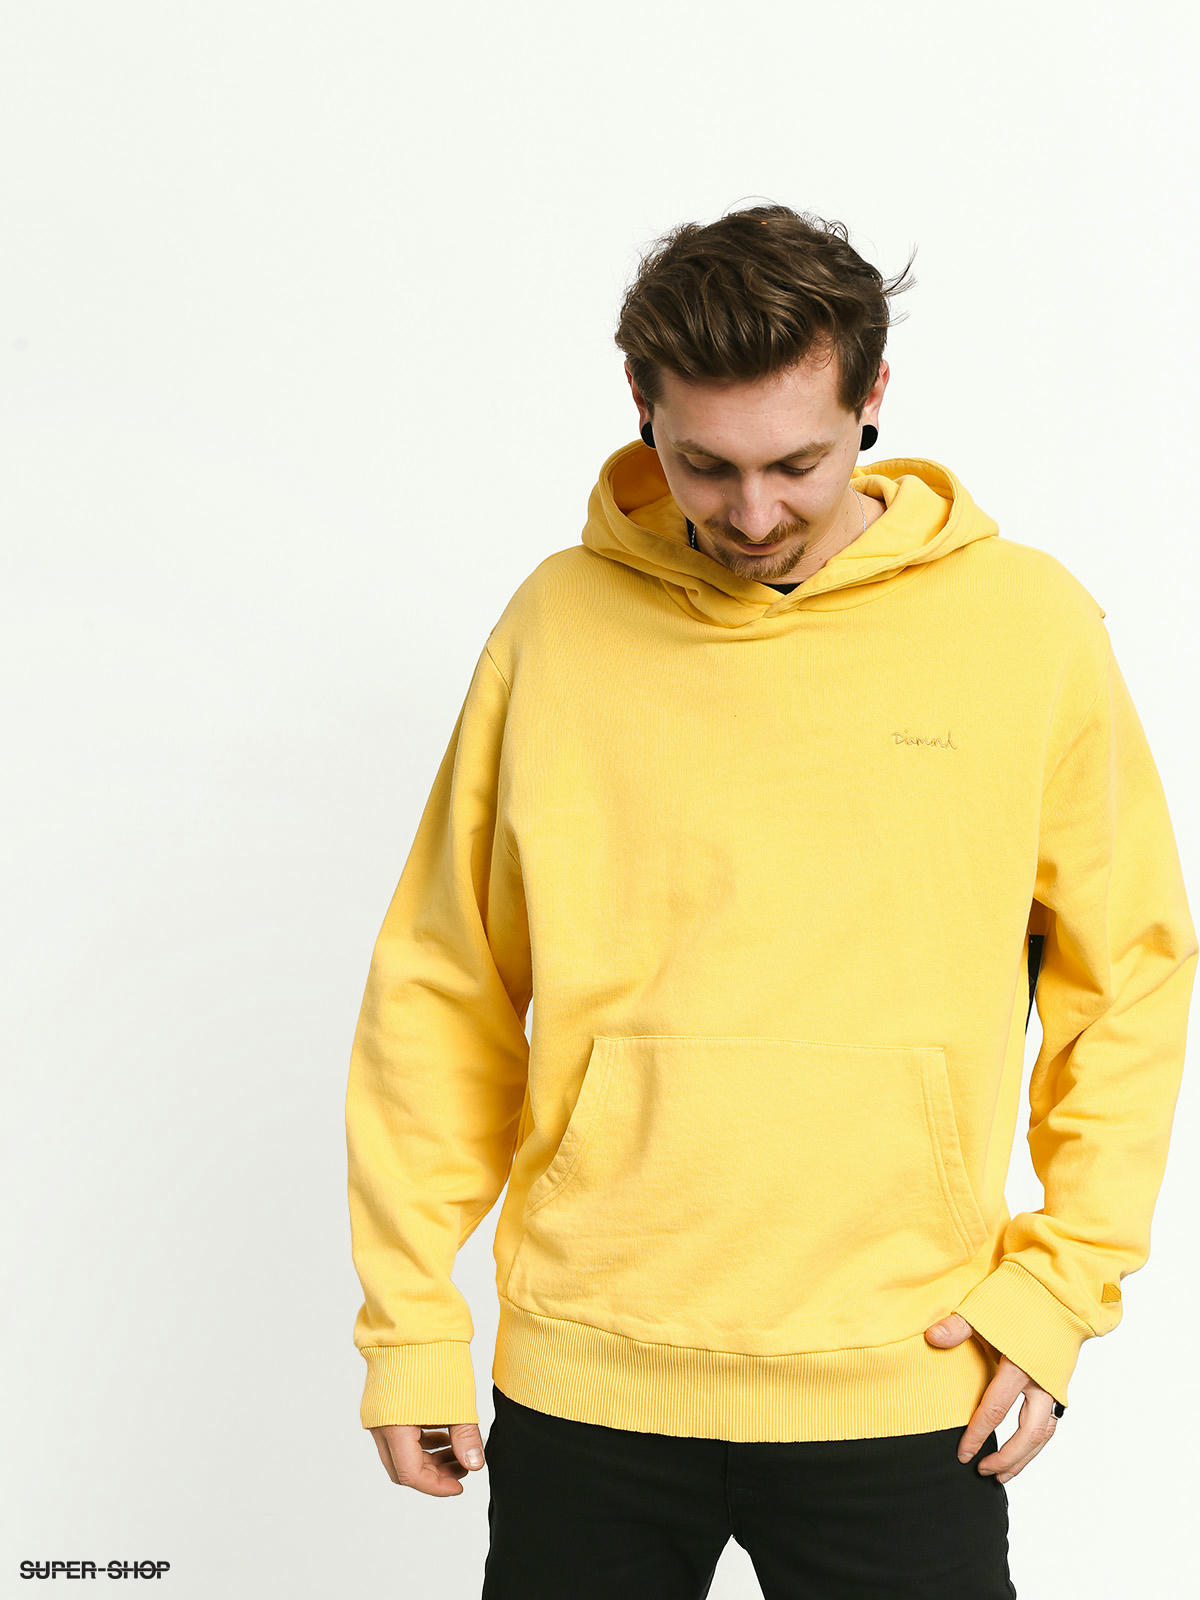 yellow hoodie oversized